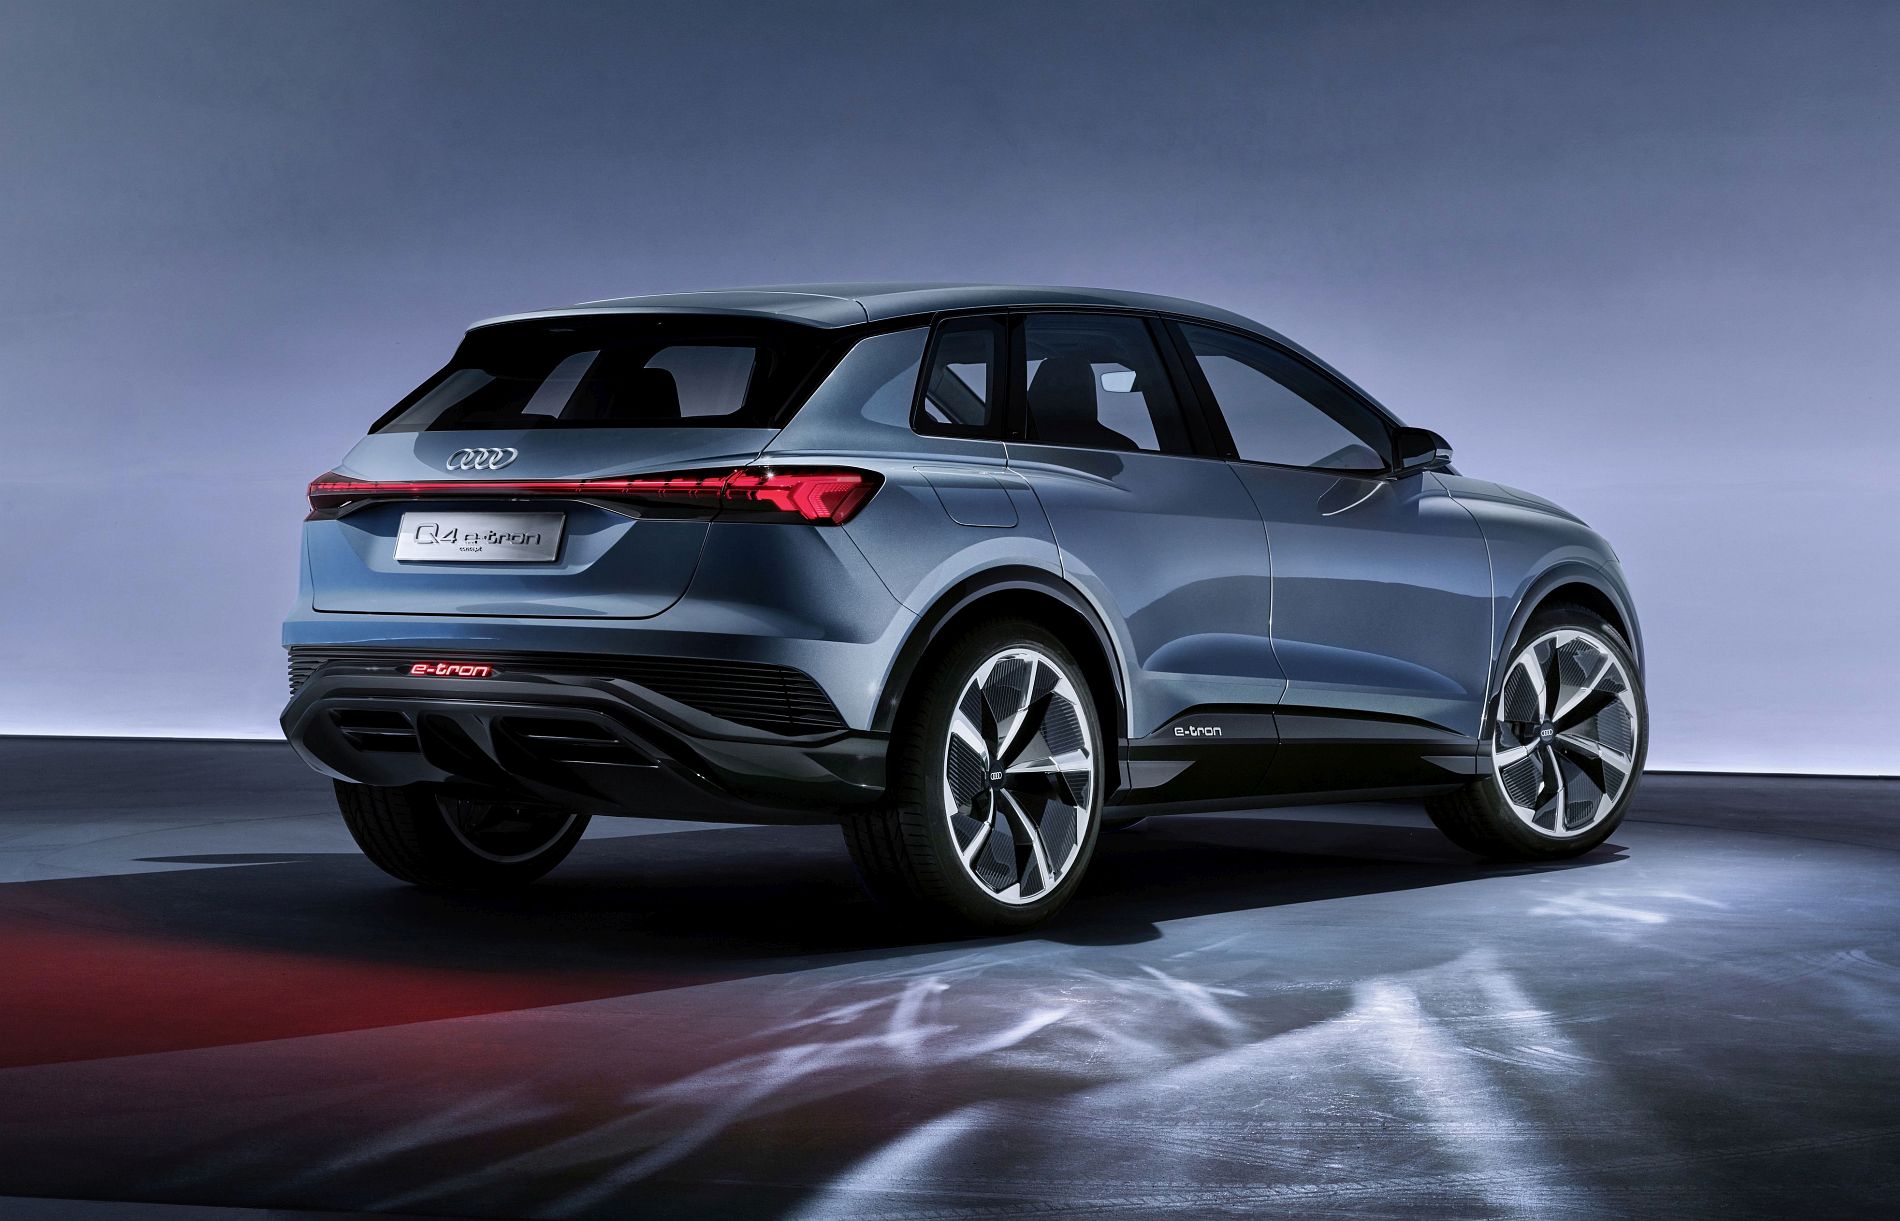 Audi Q4 e-tron concept